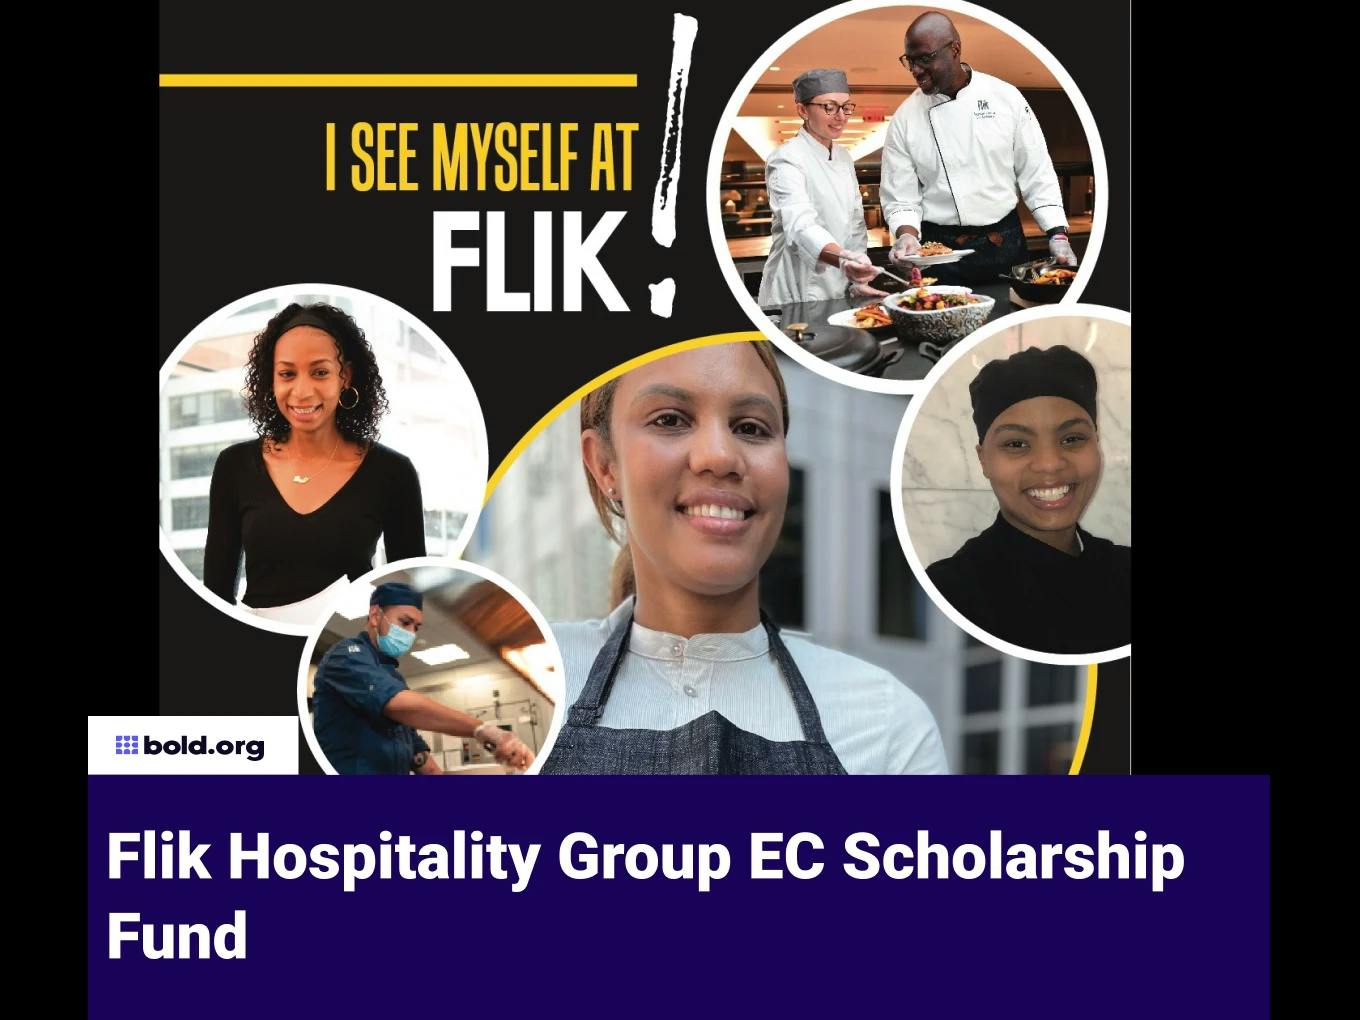 Flik Hospitality Group EC Scholarship Fund